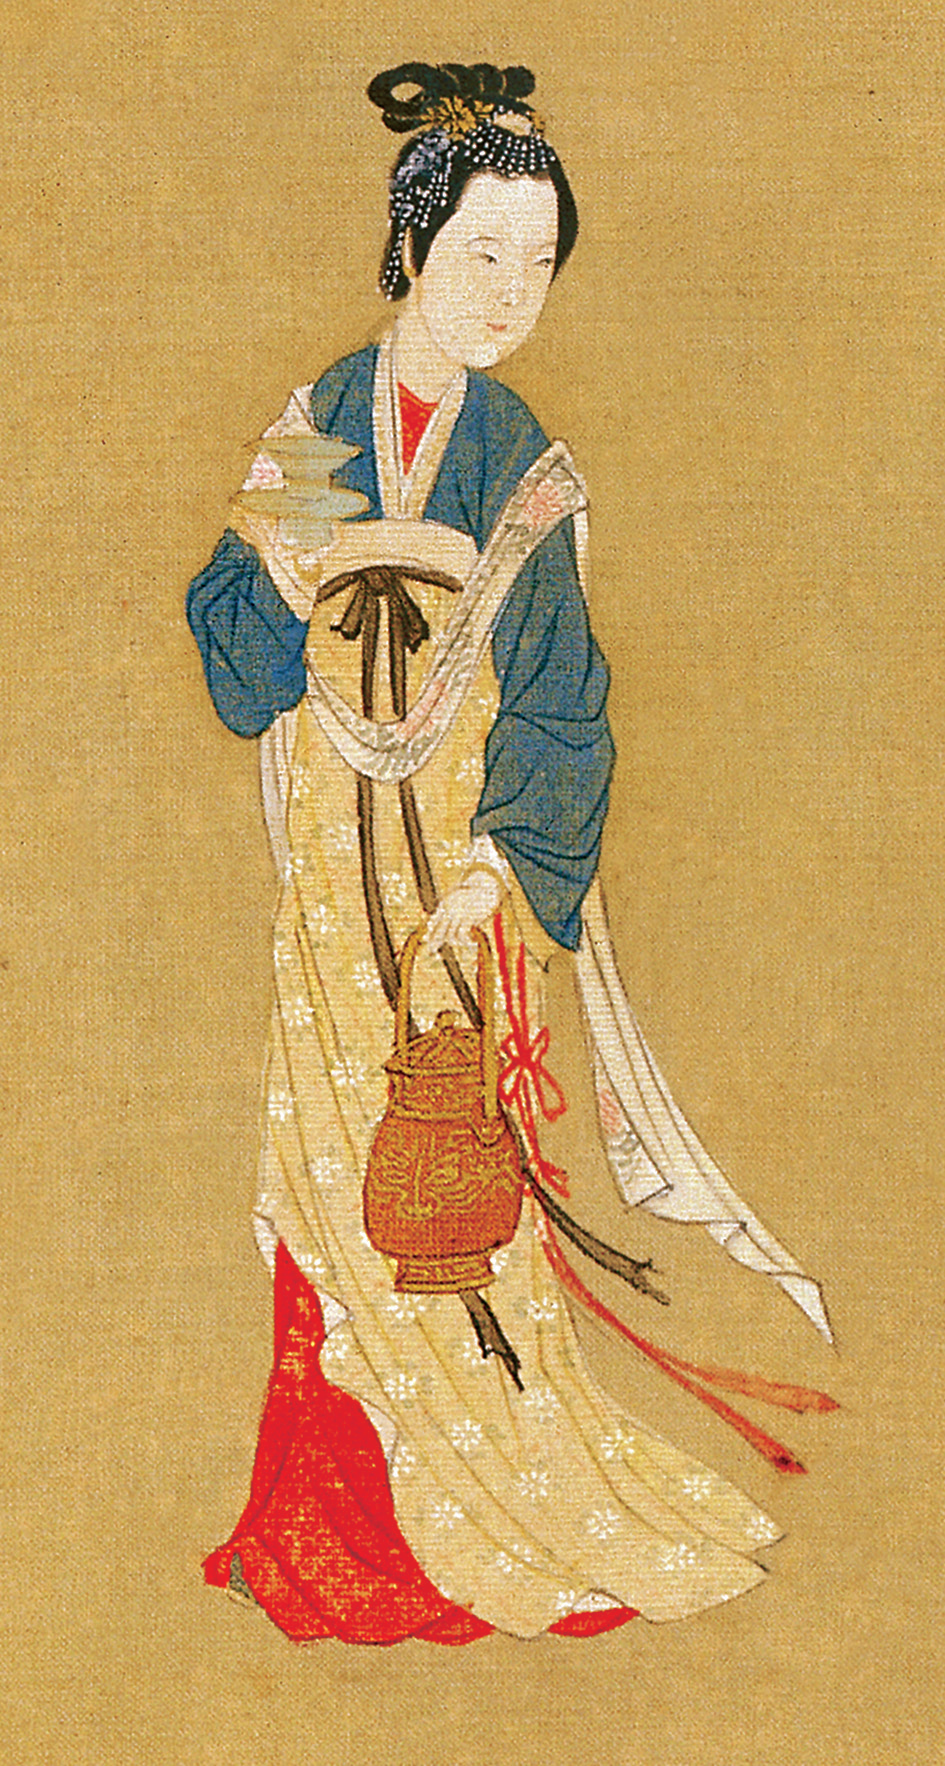 南北朝时胡汉文化交融,衣裳由收窄的款式,逐渐演变成为襦裙